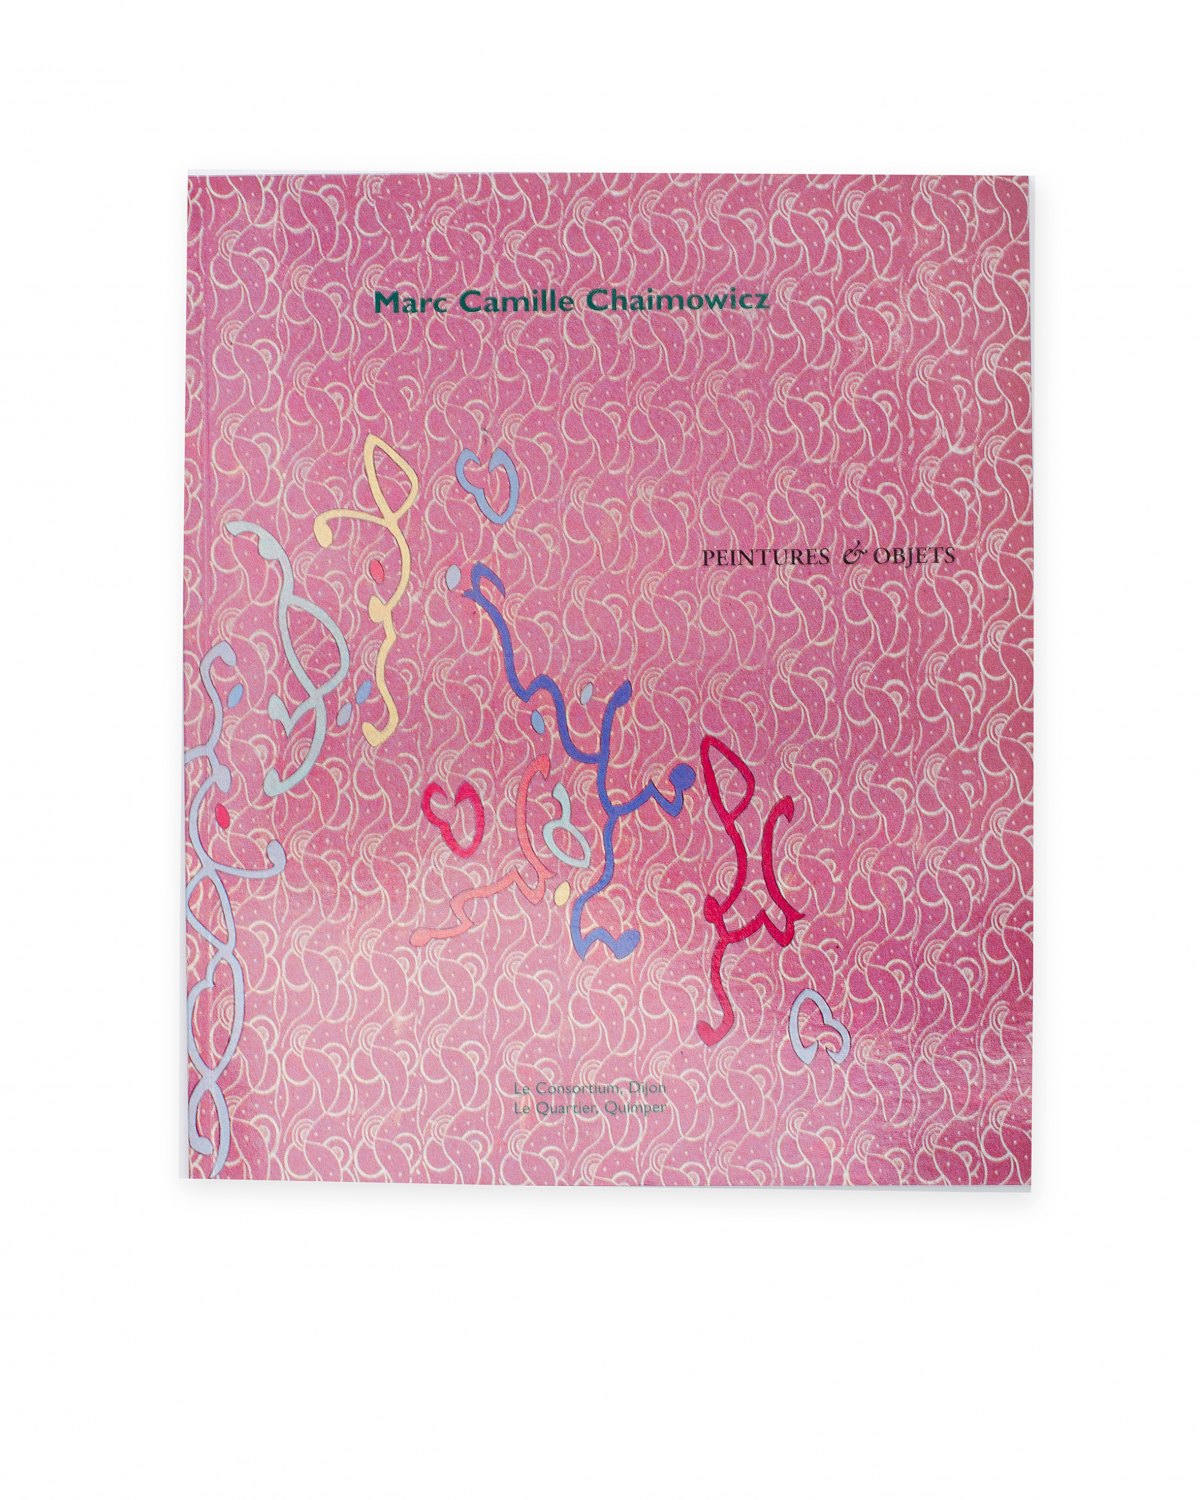 Marc Camille Chaimowicz, Peintures et Objets  Catalogue, Le Consortium, Dijon 1994, 87 p. ISBN 2-908939-05-3